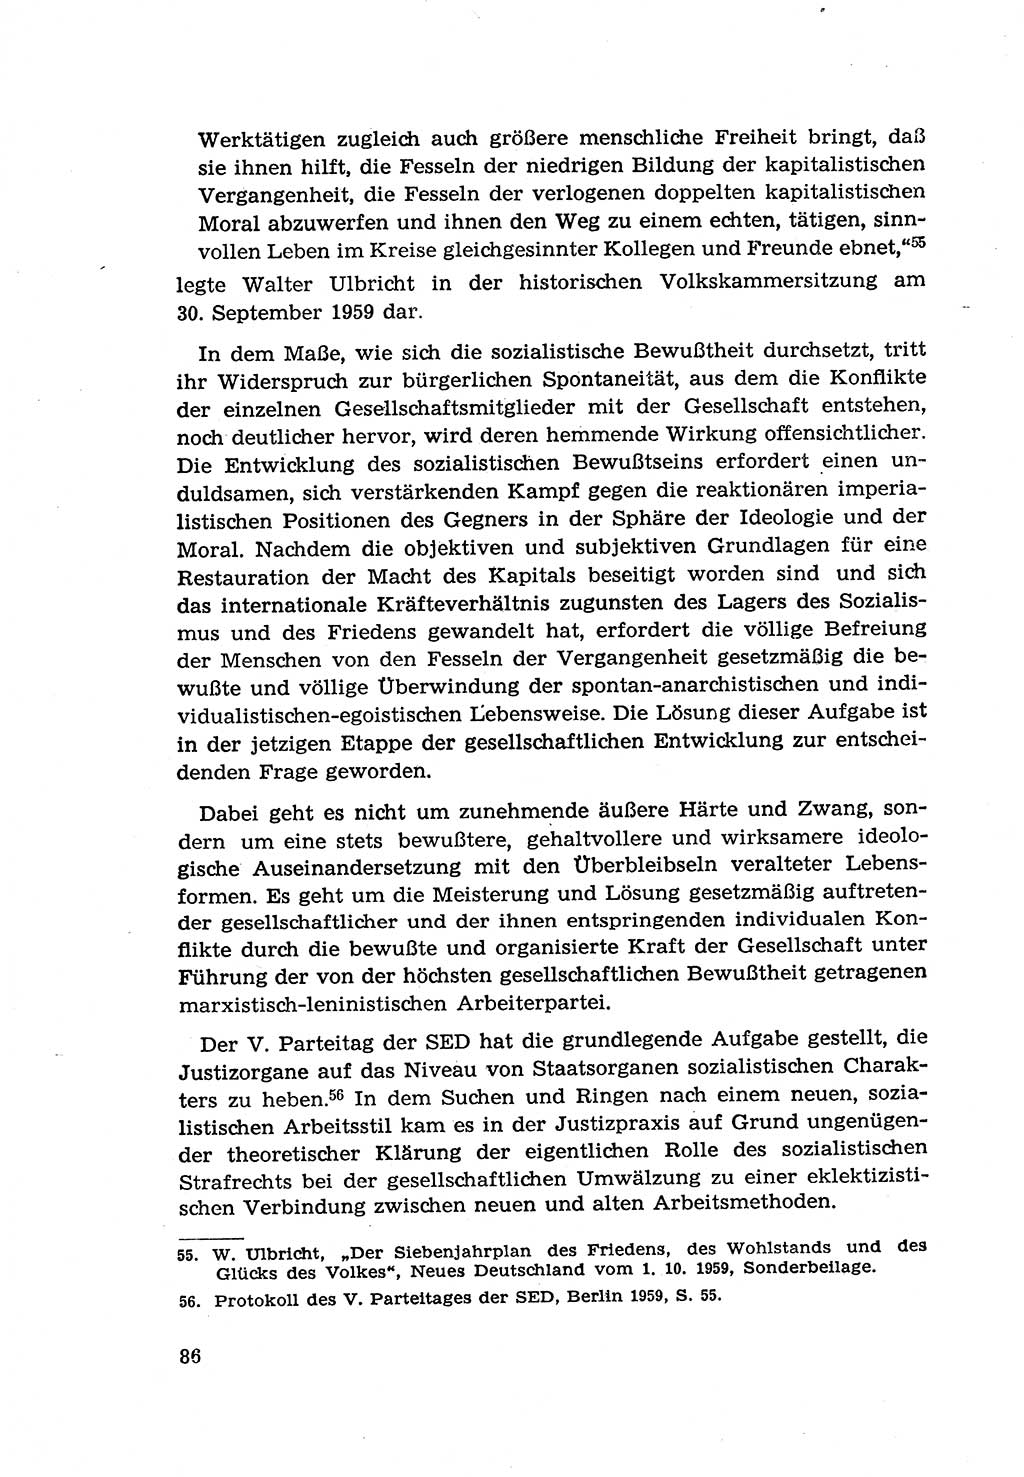 Zur Entwicklung des sozialistischen Strafrechts der Deutschen Demokratischen Republik (DDR) 1960, Seite 86 (Entw. soz. Strafr. DDR 1960, S. 86)